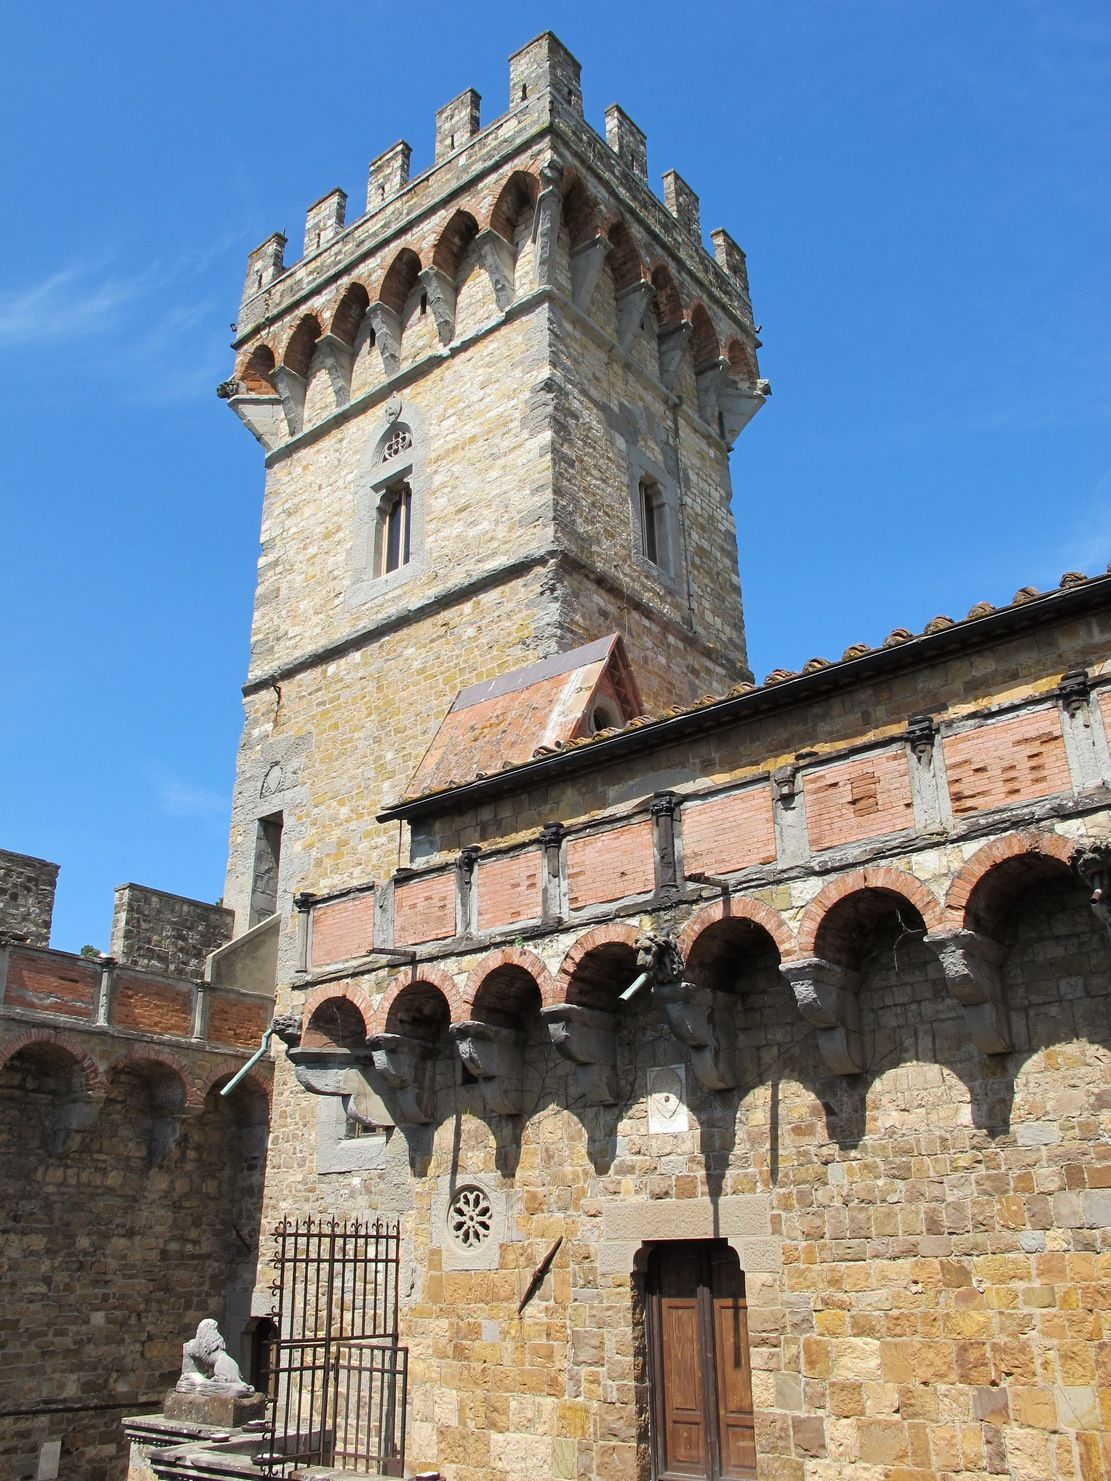 Miejsce uwięzienia naprawdę piękne, ale jak się stamtąd wydostać? To pytanie zadawał sobie de Wiart na zamku Vincigliata (fot. Sailko, lic. CC BY-SA 3.0).